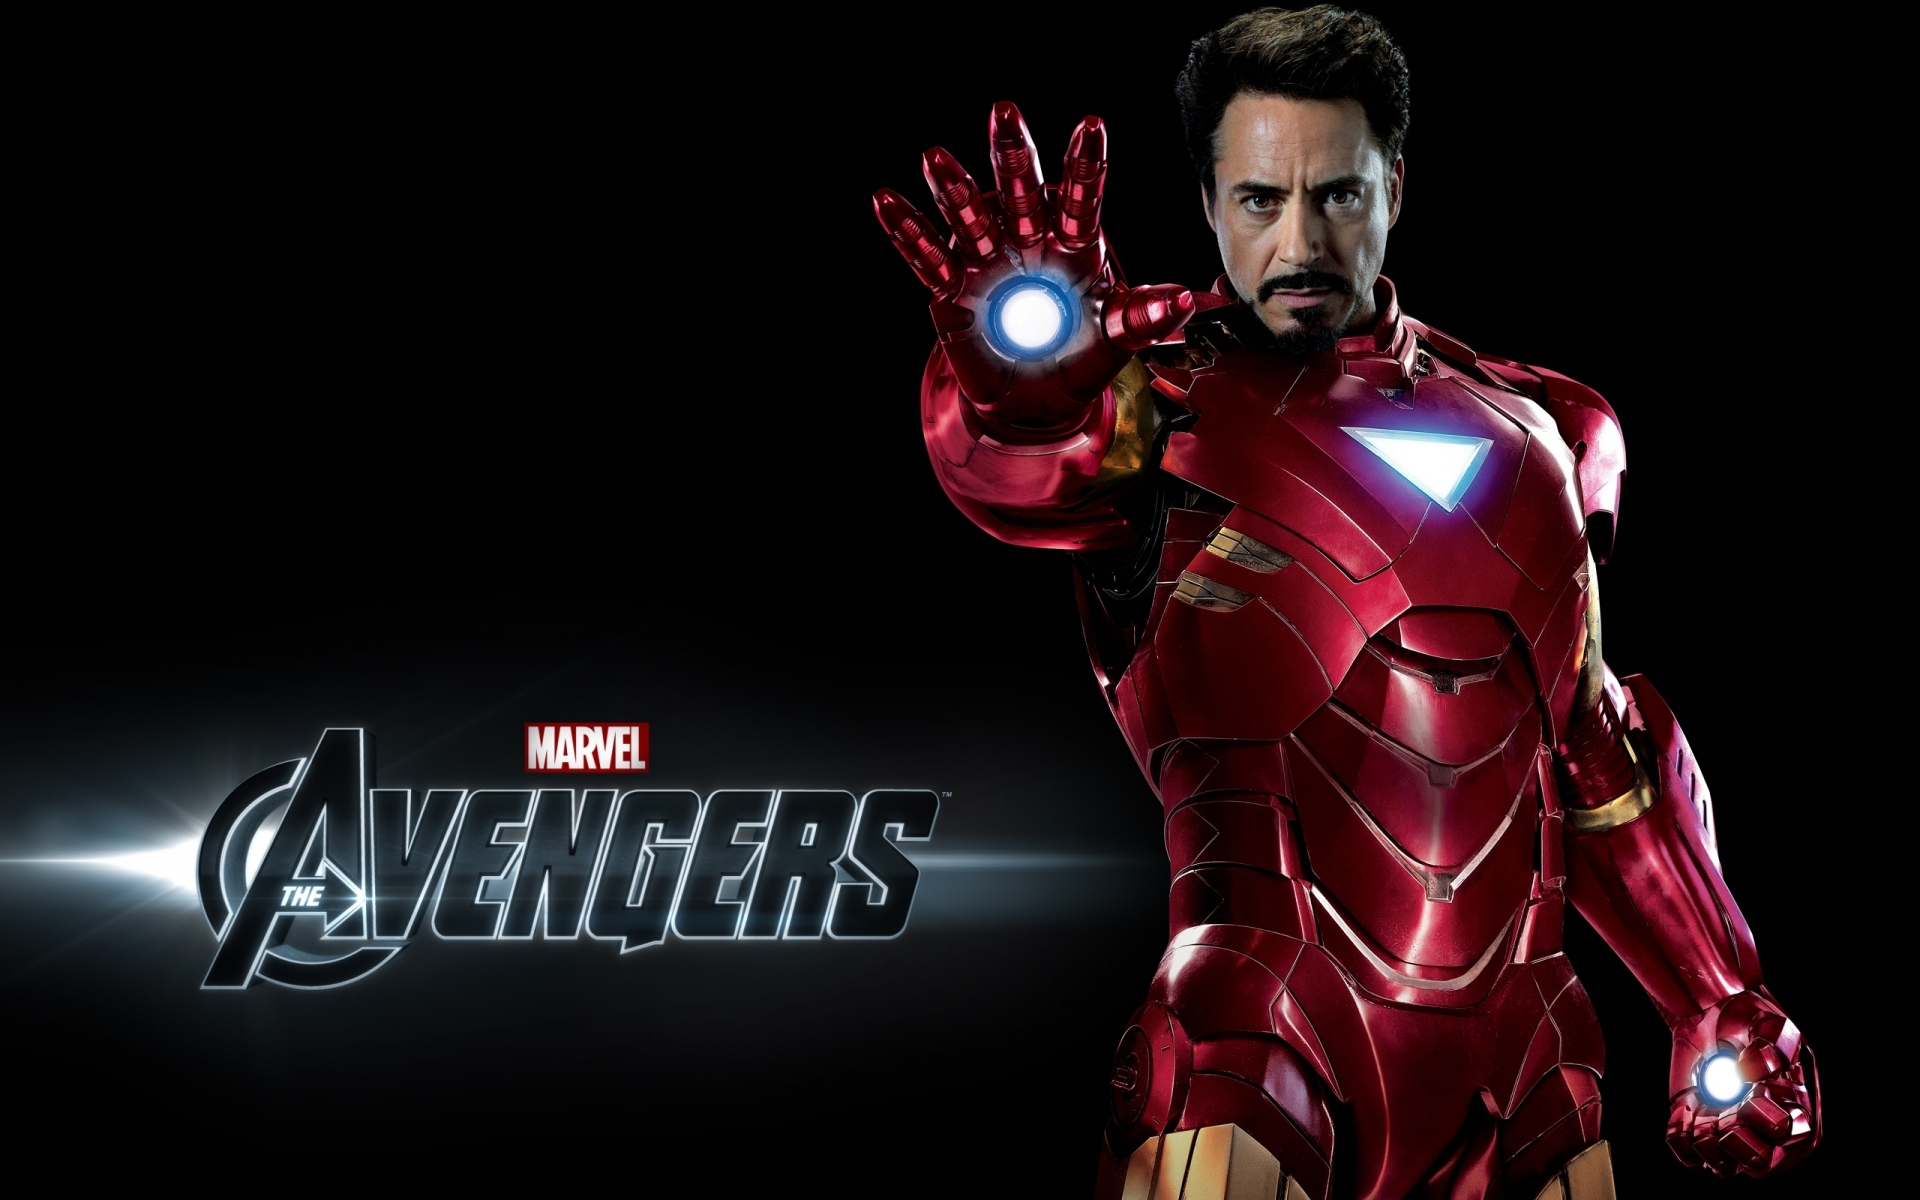 Avengers Iron Man for 1920 x 1200 widescreen resolution